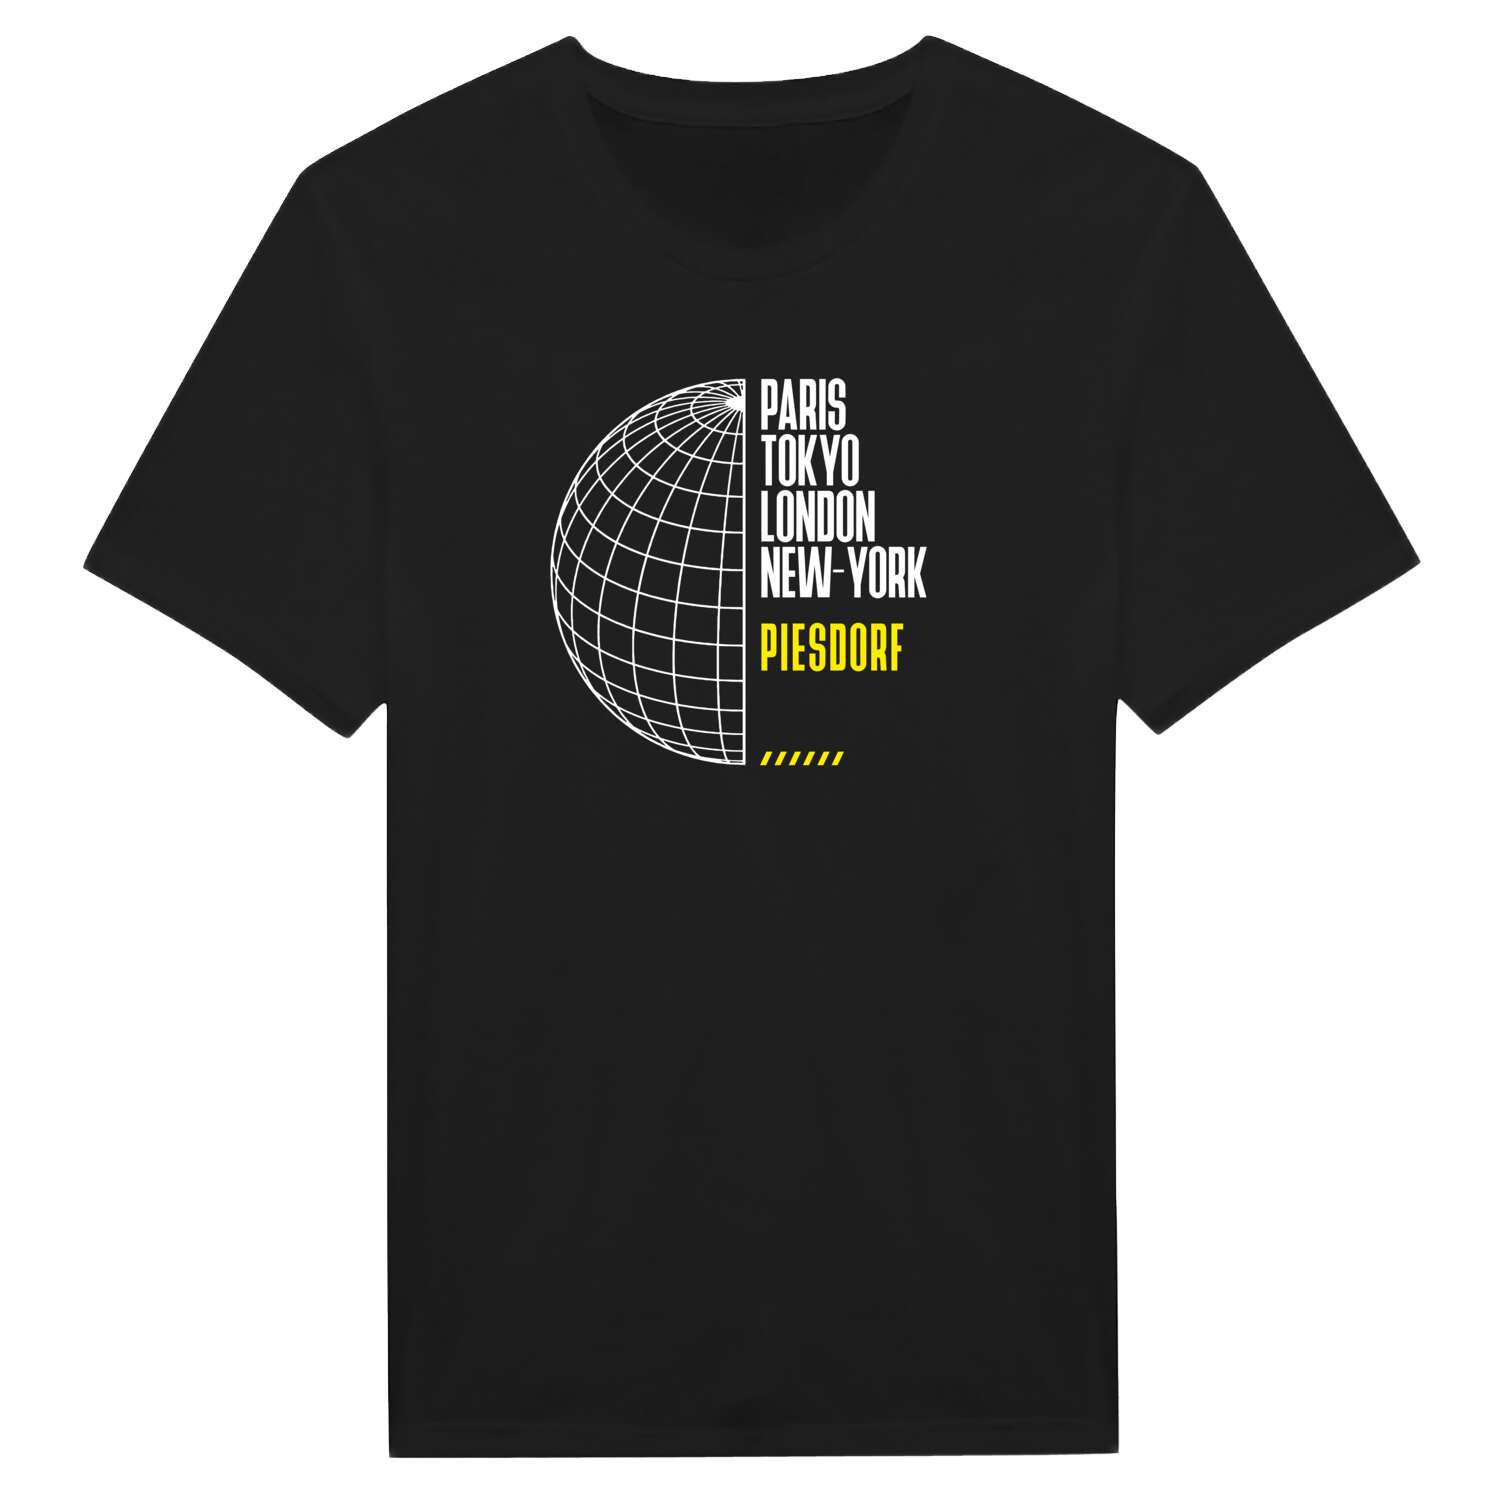 Piesdorf T-Shirt »Paris Tokyo London«